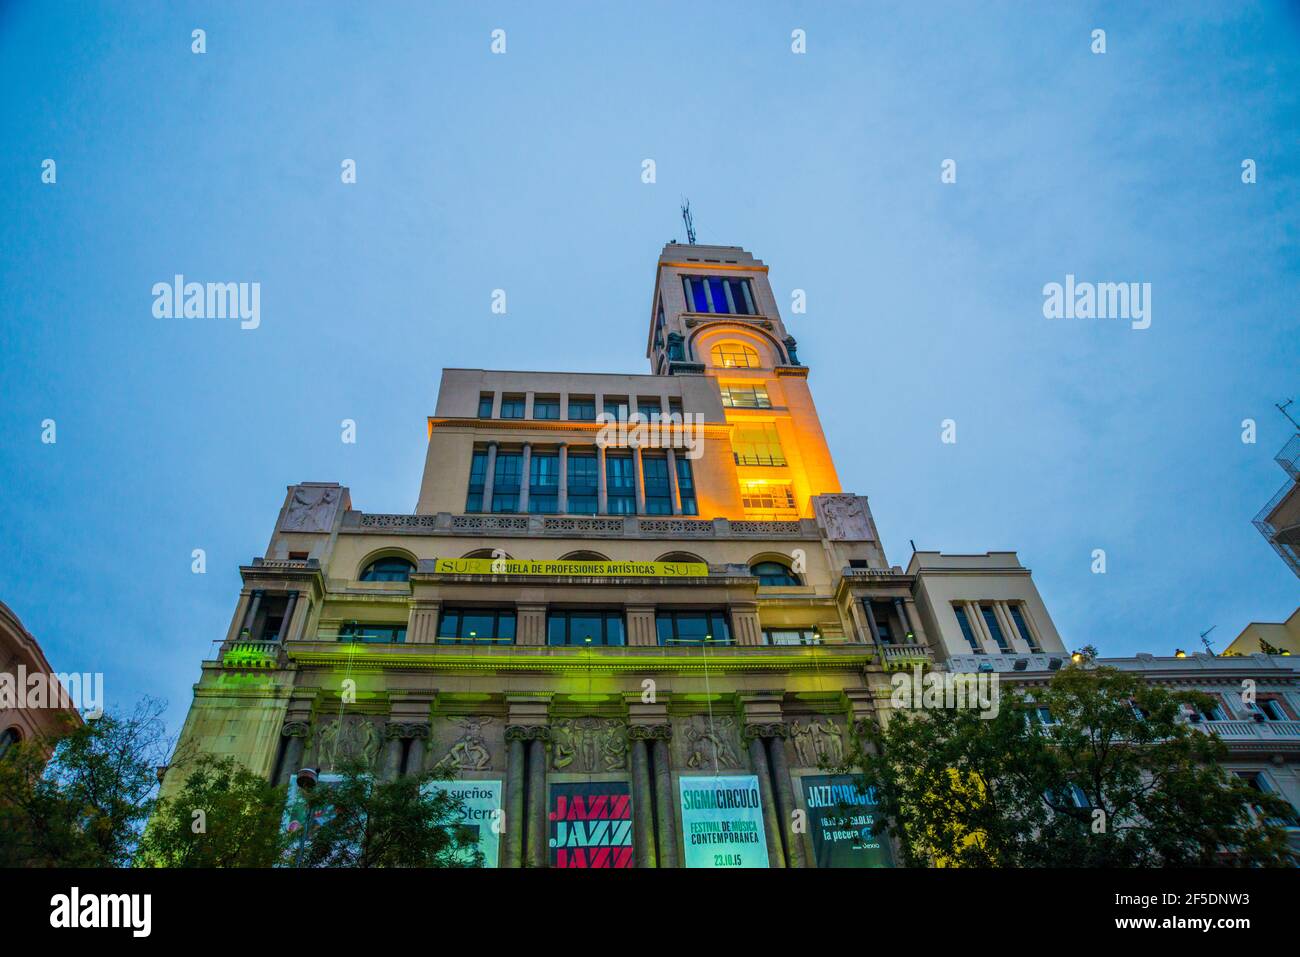 Facade of Circulo de Bellas Artes building, night view. Alcala street, Madrid, Spain. Stock Photo